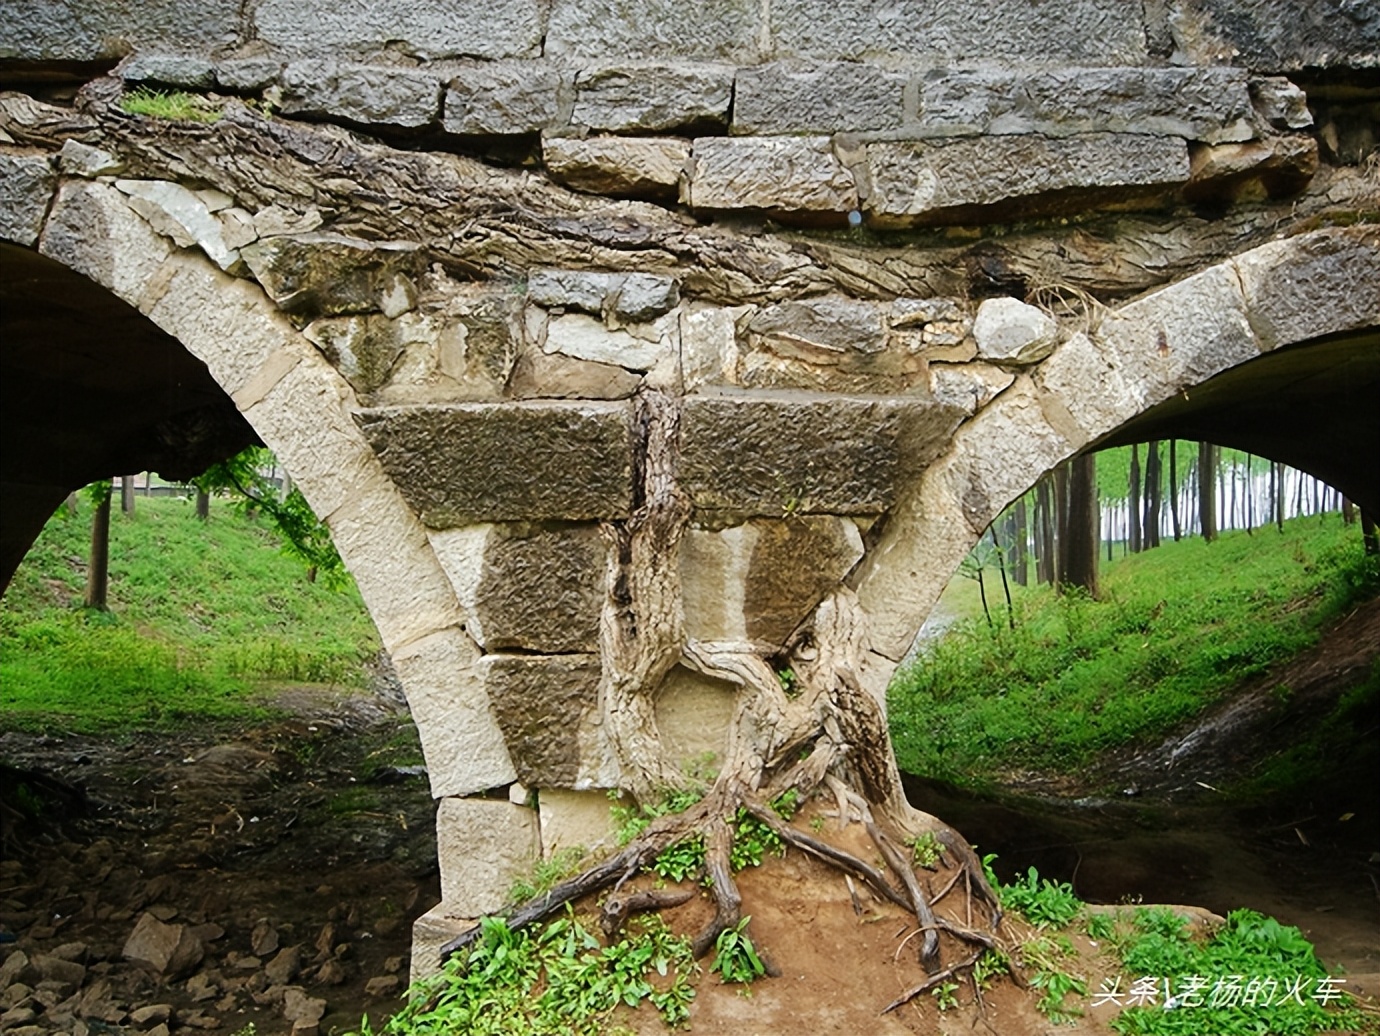 2011年拍摄的“树驮桥”古朴原始，树桥共生，相依为命